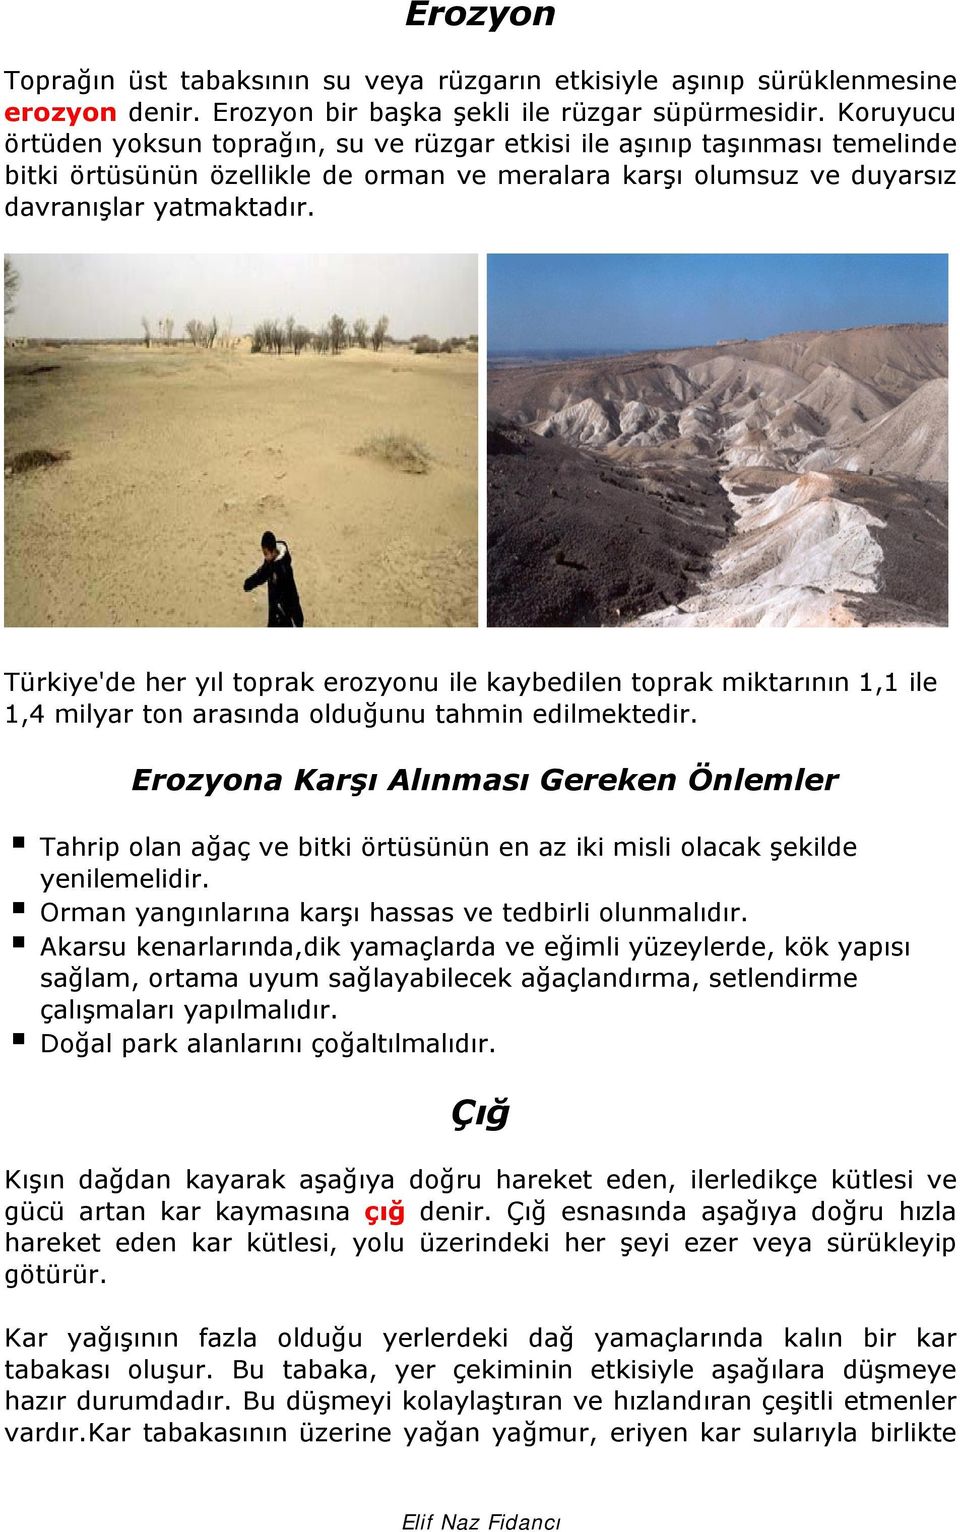 Türkiye'de her yıl toprak erozyonu ile kaybedilen toprak miktarının 1,1 ile 1,4 milyar ton arasında olduğunu tahmin edilmektedir.